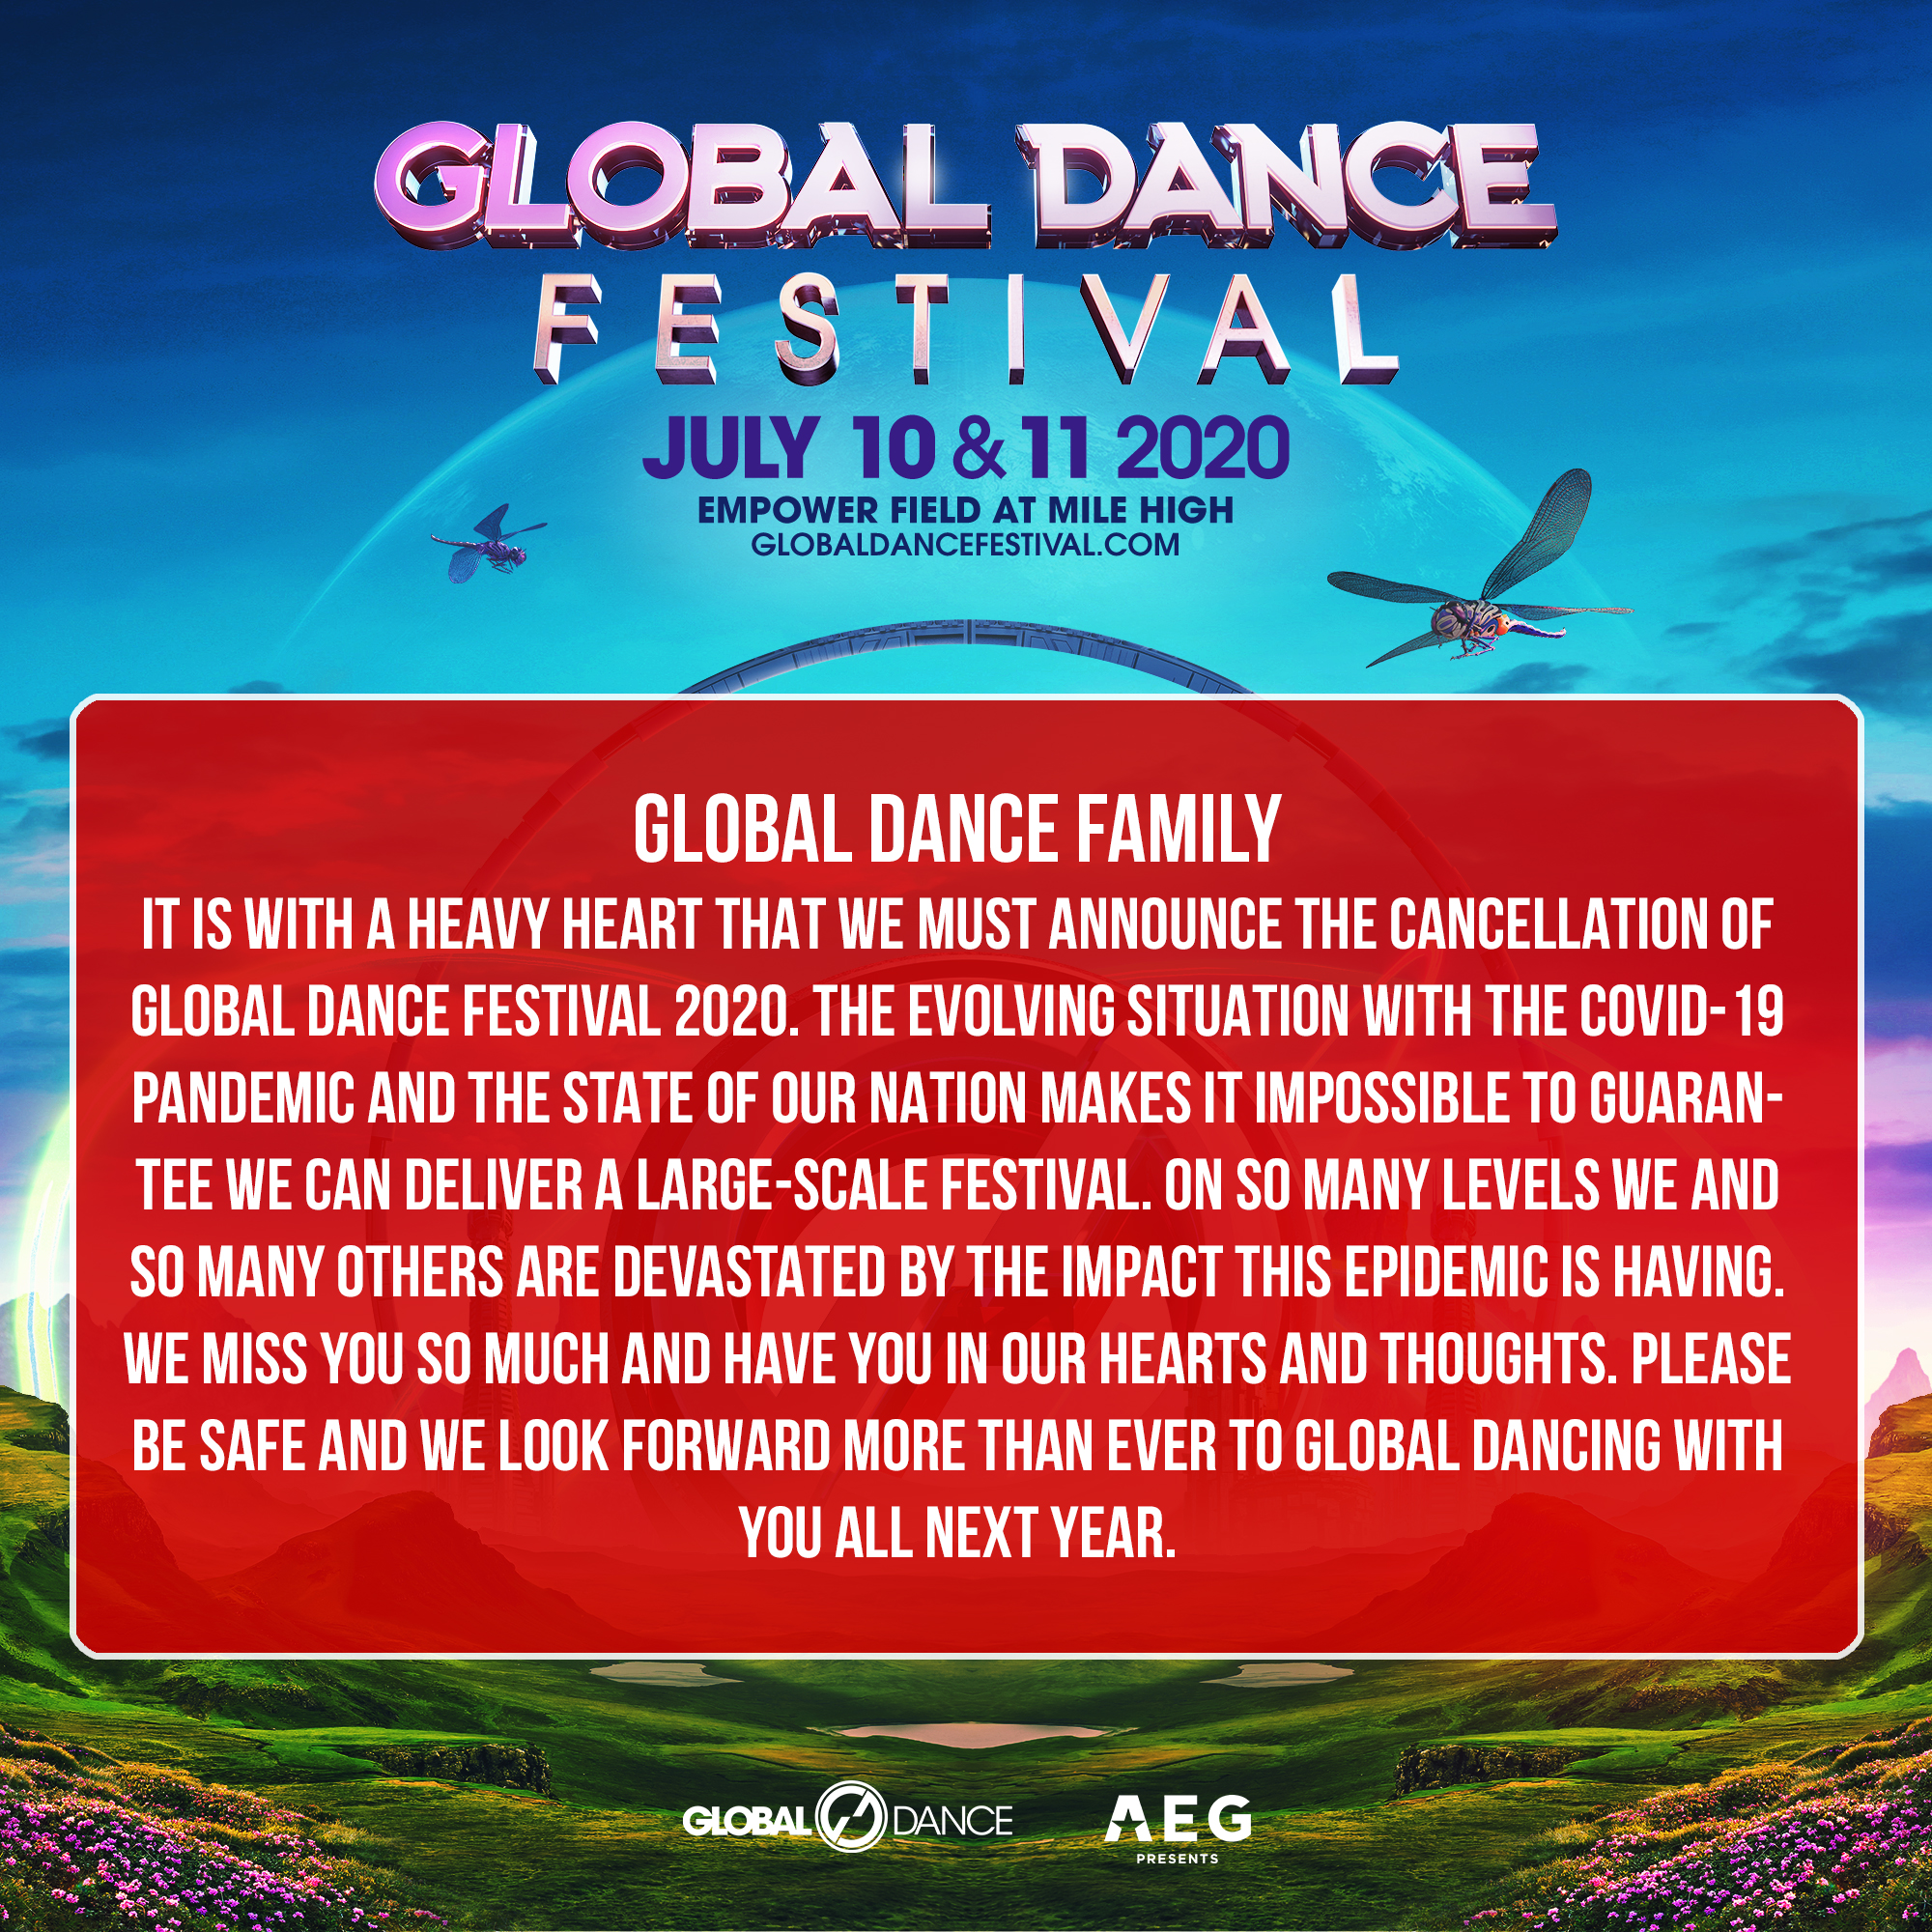 Global Dance Festival 2020 